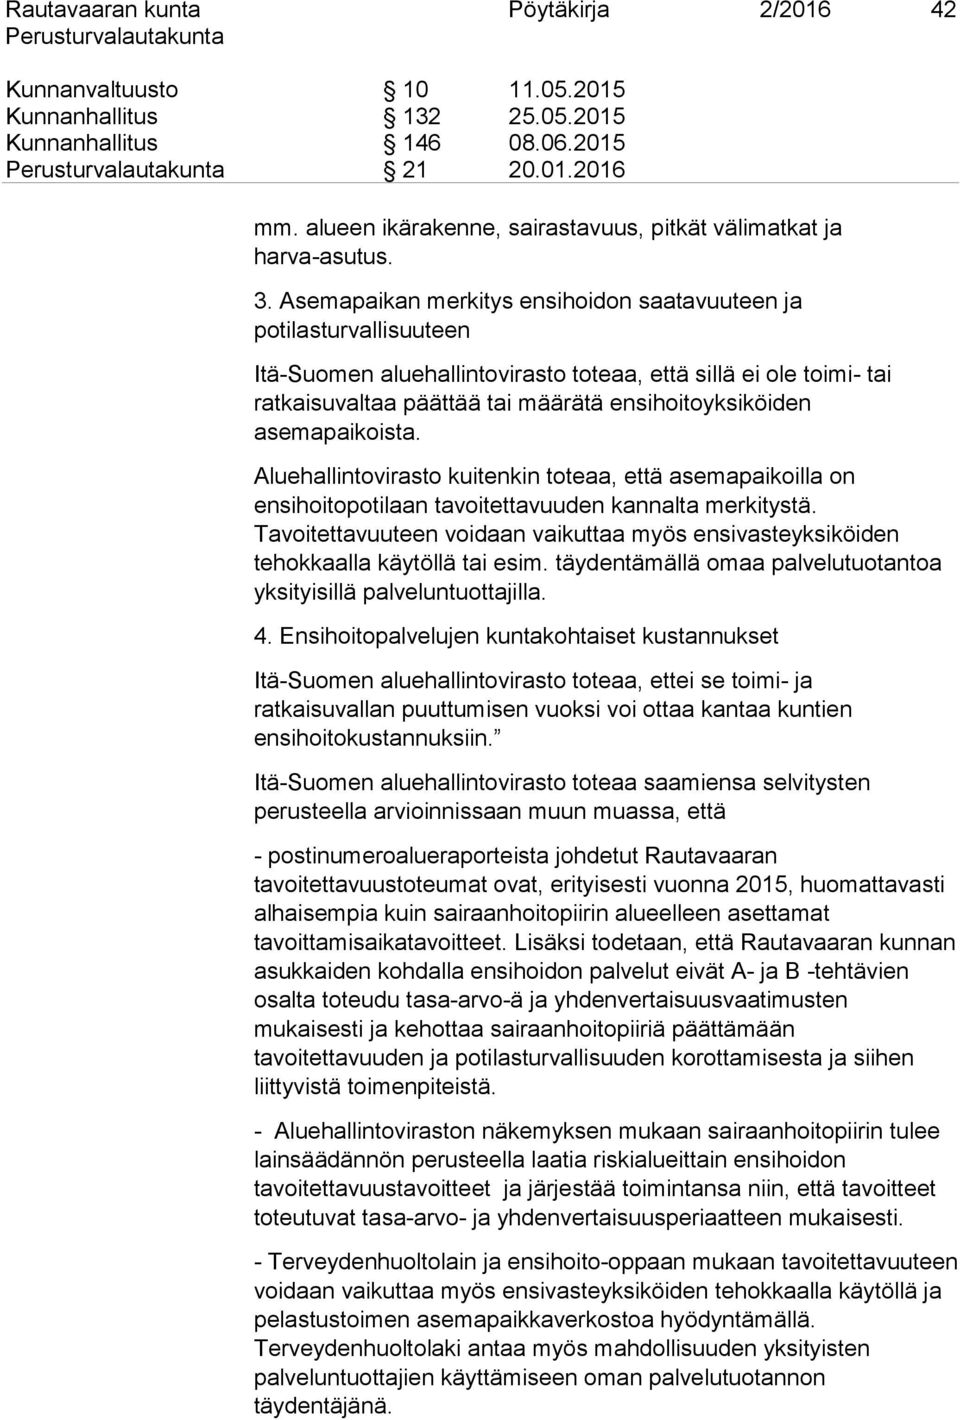 Asemapaikan merkitys ensihoidon saatavuuteen ja potilasturvallisuuteen Itä-Suomen aluehallintovirasto toteaa, että sillä ei ole toimi- tai ratkaisuvaltaa päättää tai määrätä ensihoitoyksiköiden